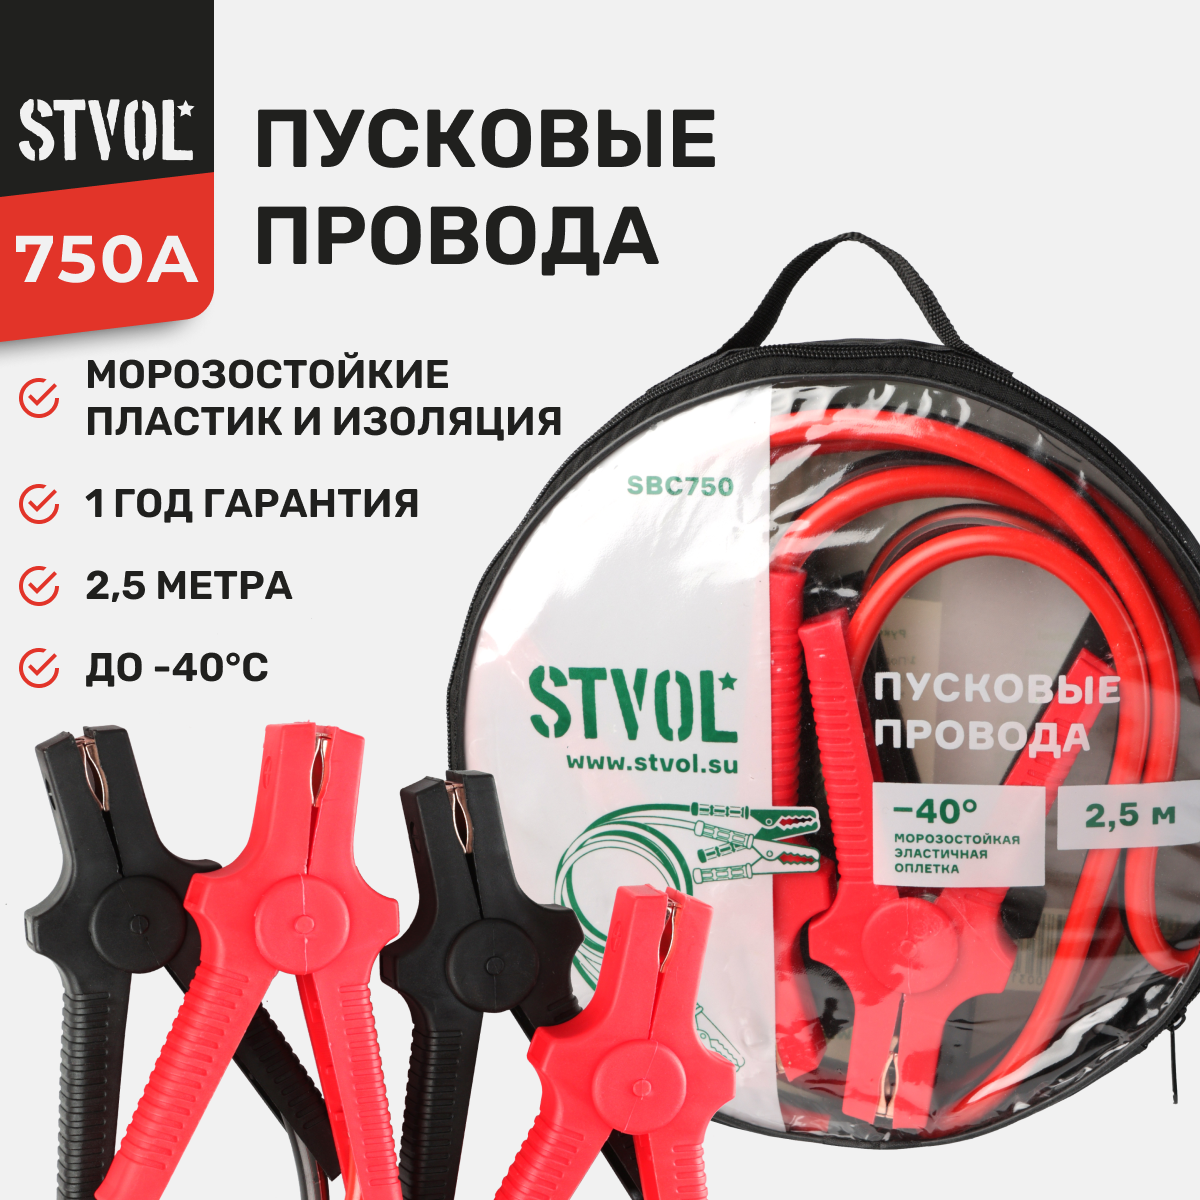 Провода Прикуривания 750А (2,5М, 12/24В), Stvol STVOL арт. SBC750